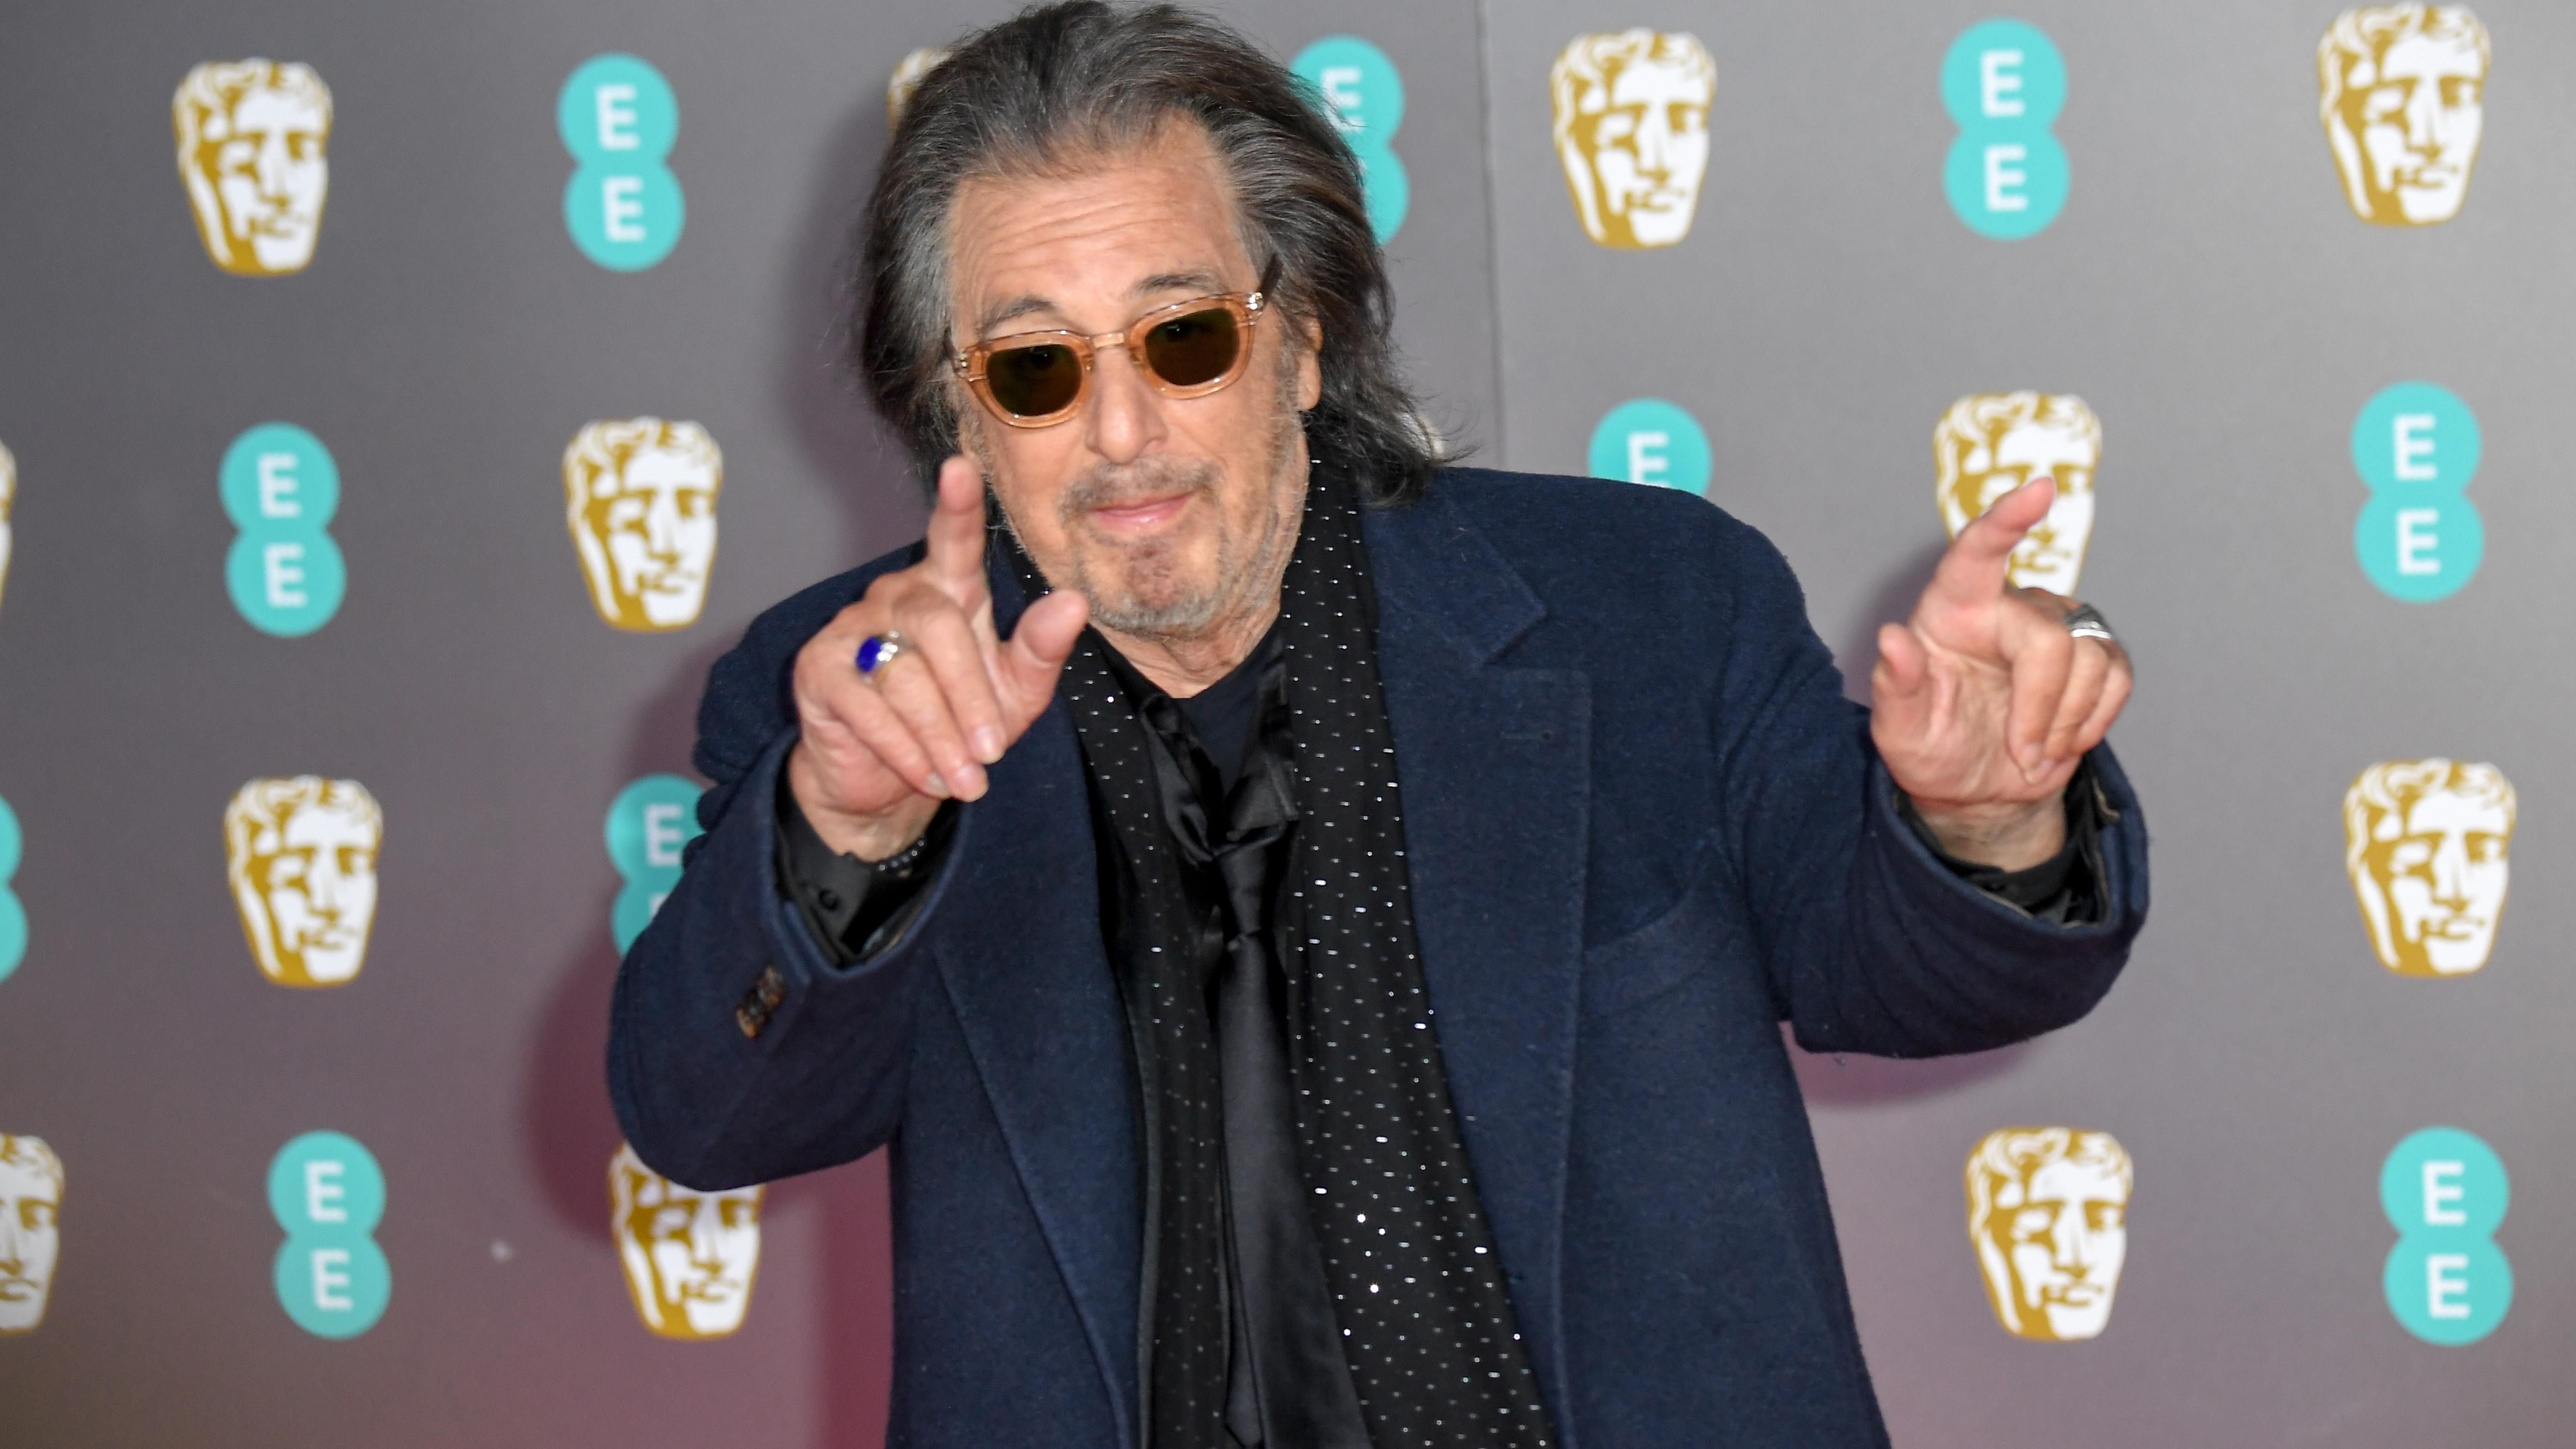 Конфуз на BAFTA-2020: 79-летний Аль Пачино упал на красной дорожке